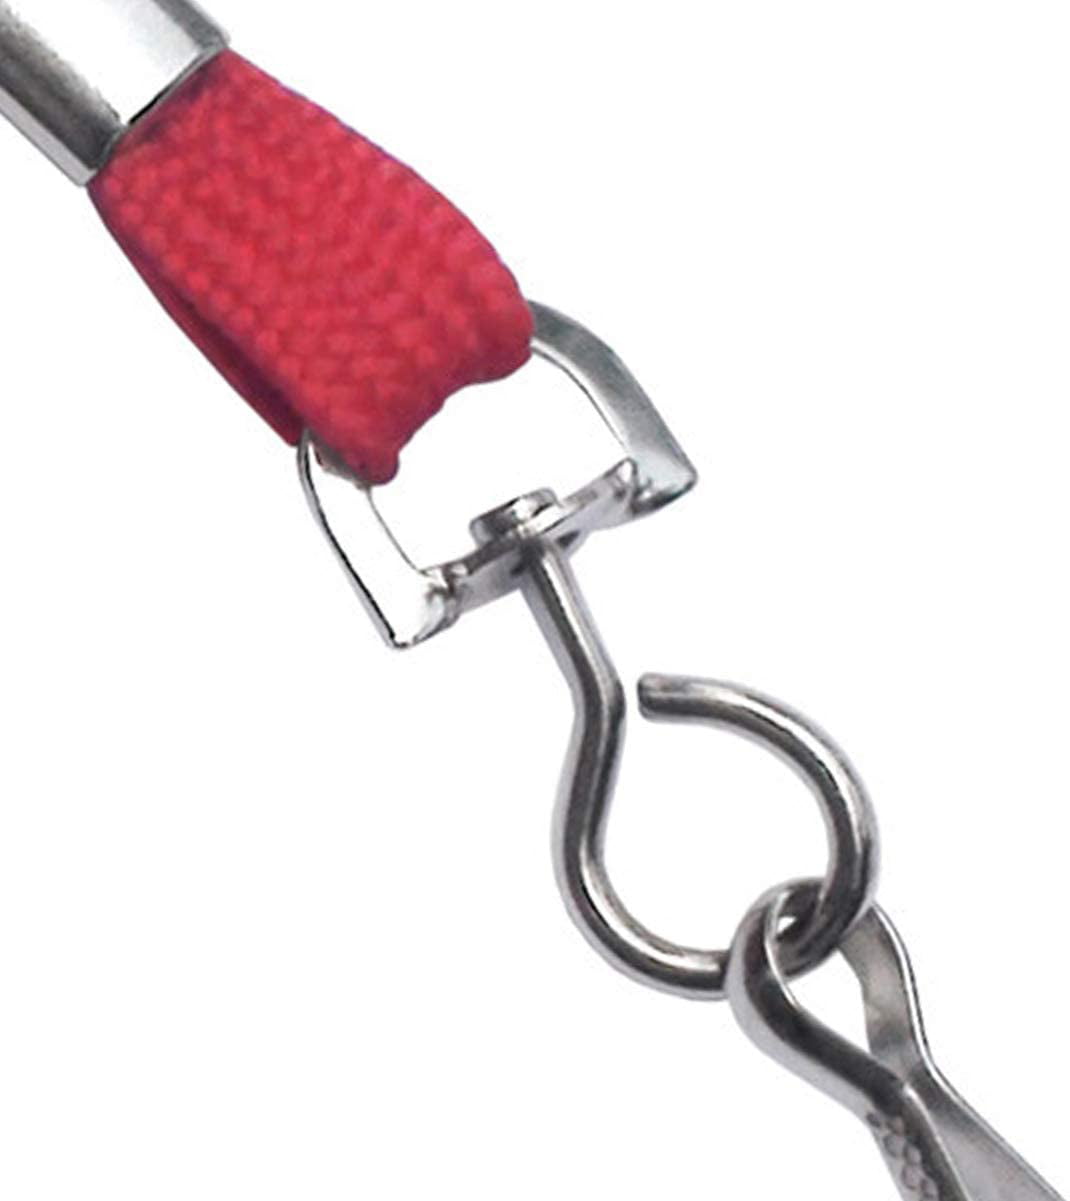 lanyard spring clip  Metal swivel Lanyard spring clip hooks wholesale